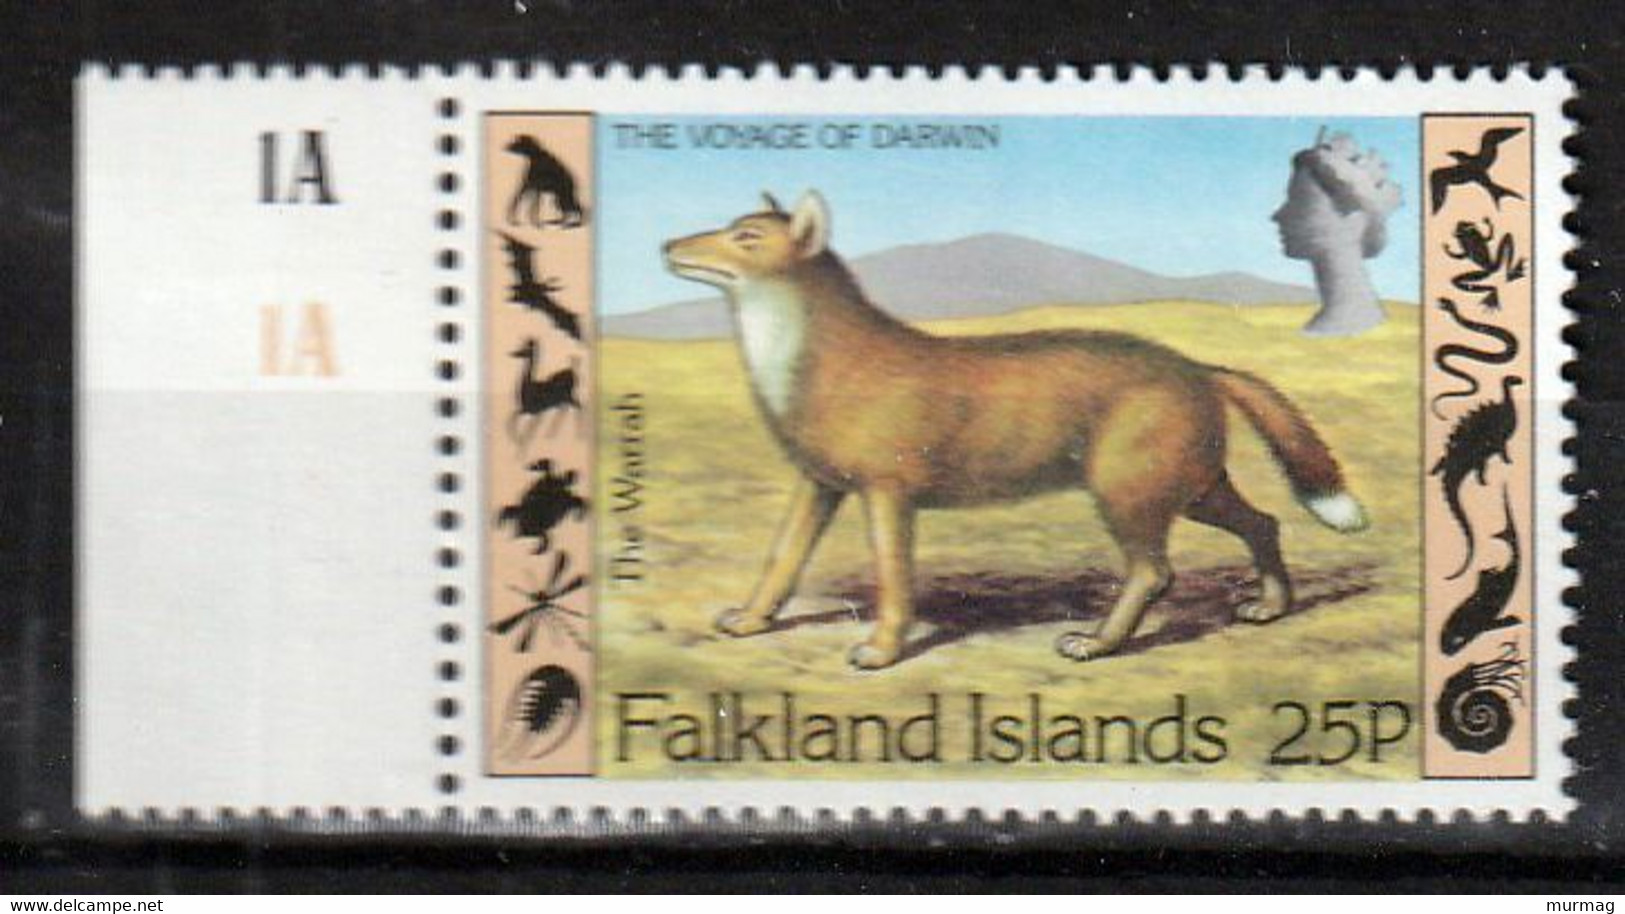 FALKLAND ISLANDS - Faune, The Warrah, Le Voyage De Darwin - Y&T N° 345 - MNH - Falklandeilanden